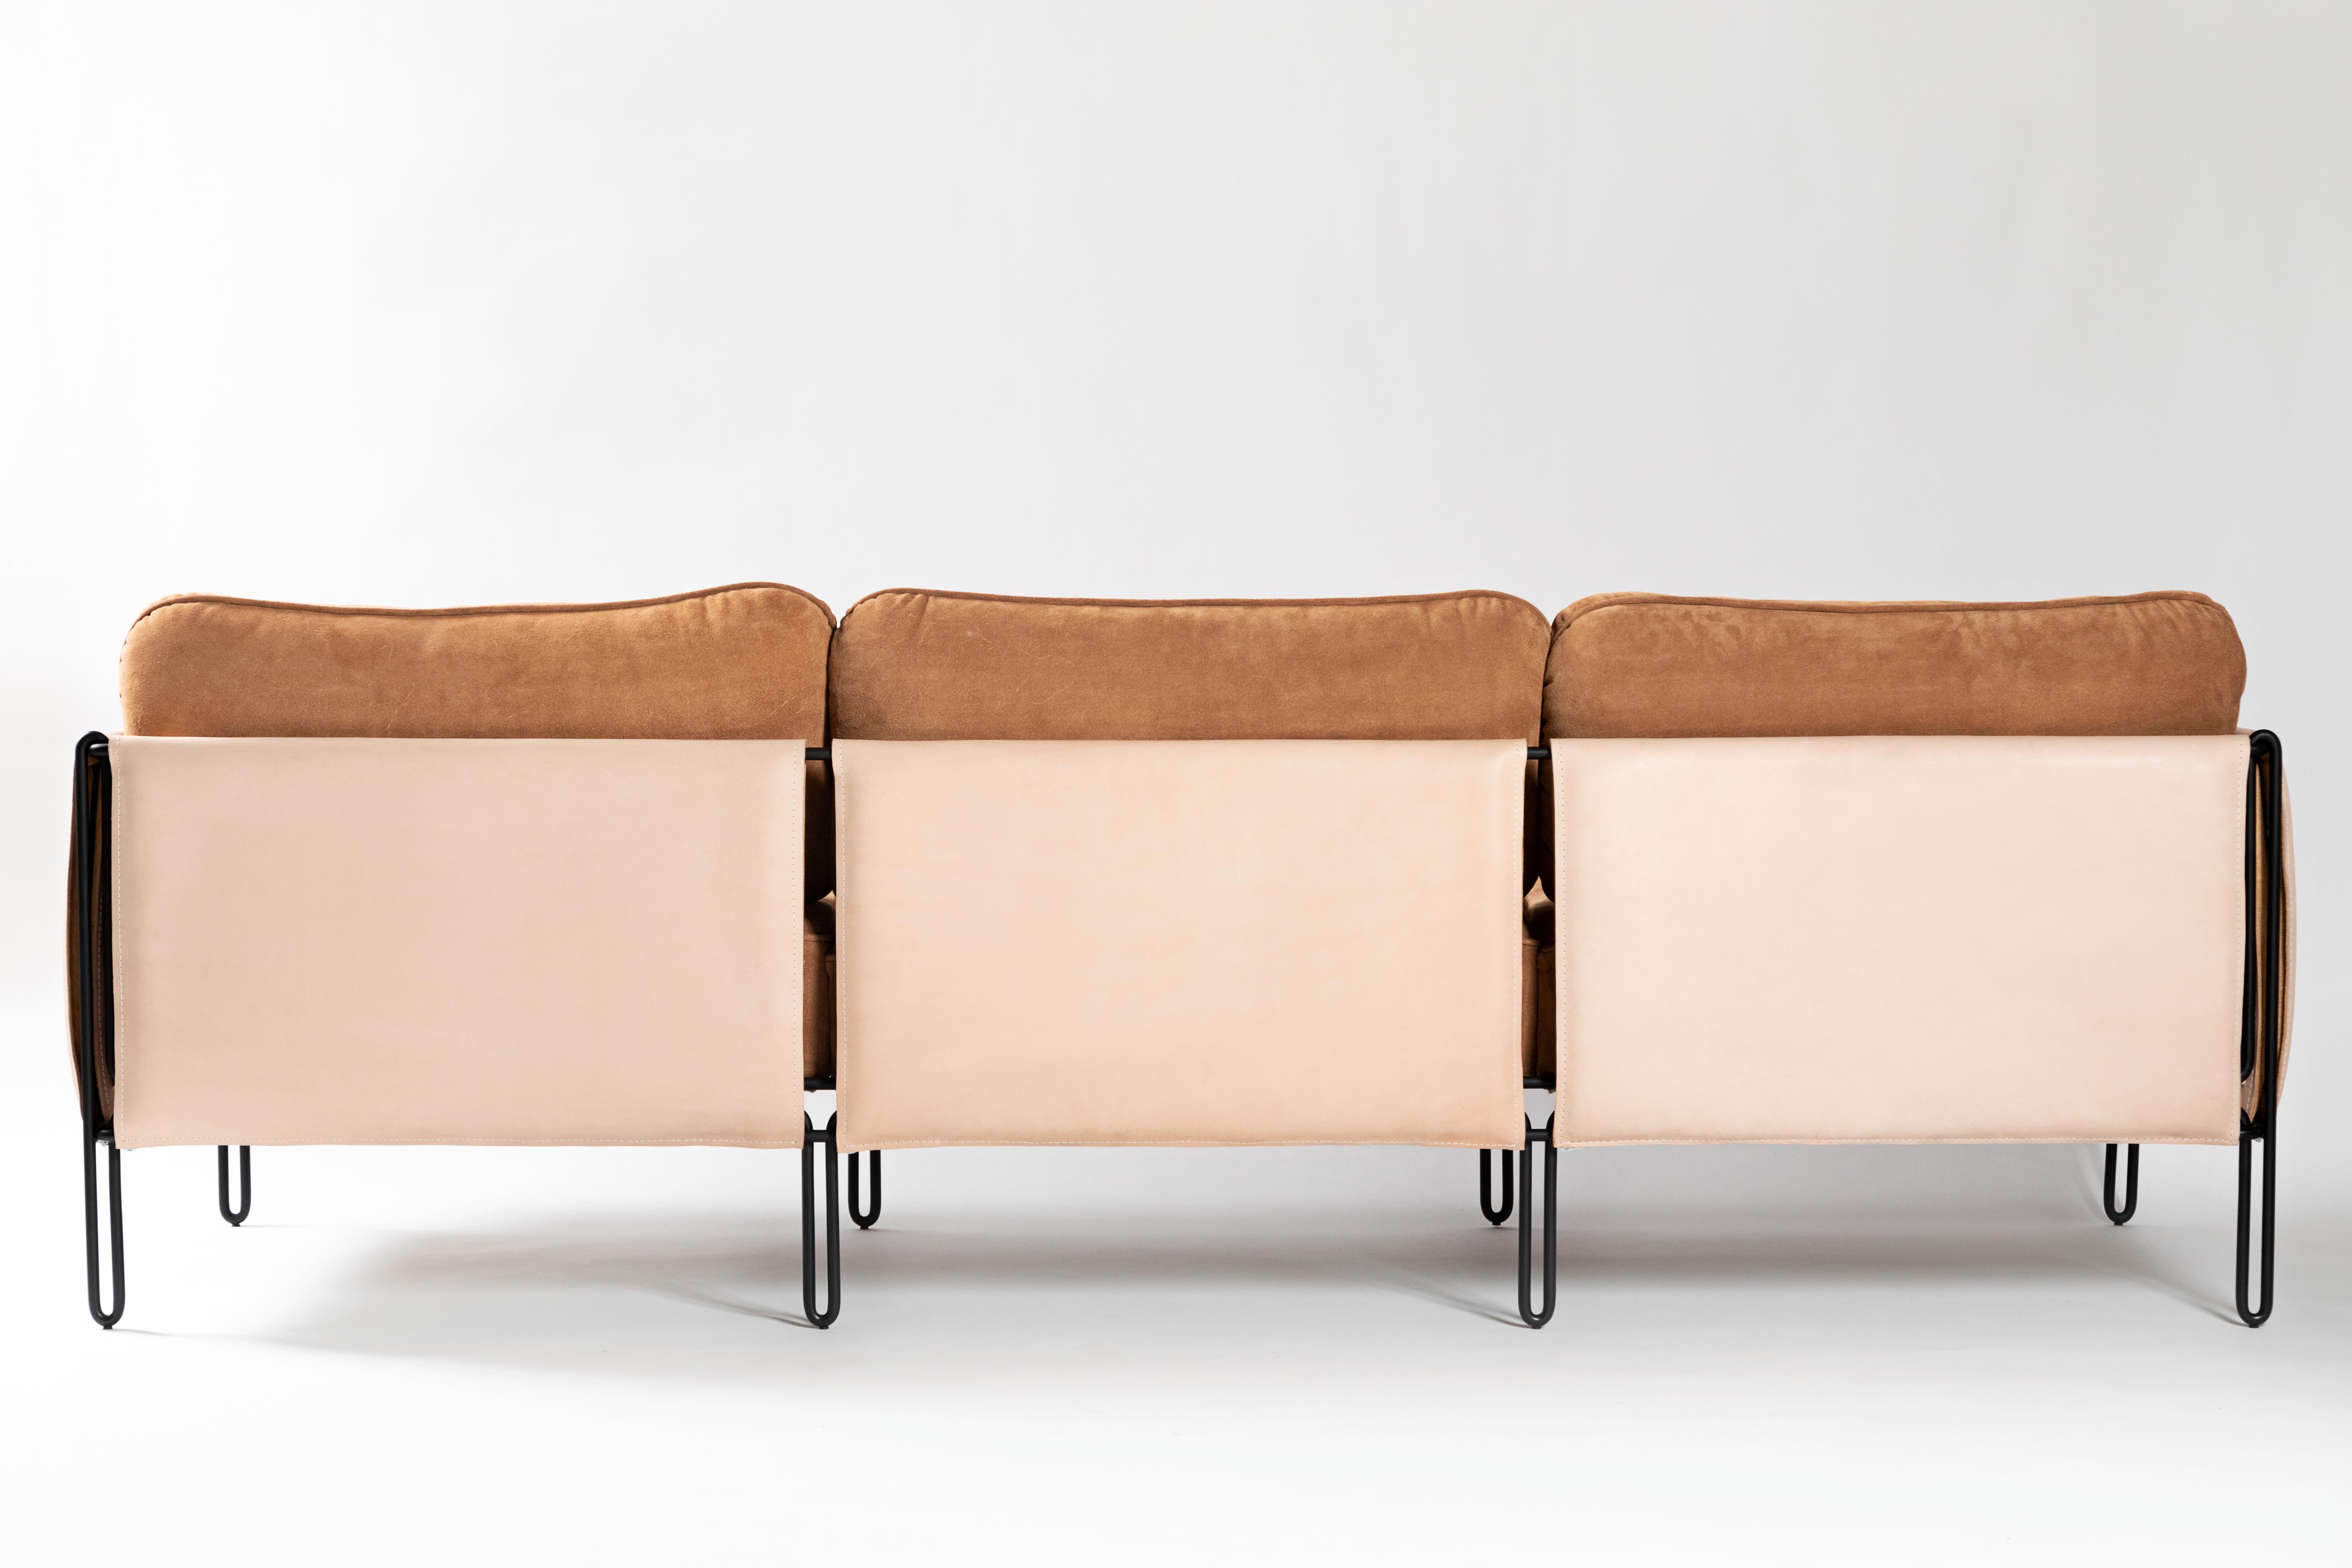 Ce minimaliste primé  le canapé en acier et cuir est conçu selon un raisonnement géométrique et architectonique. La légèreté est garantie par la délicate structure en fer qui repose délicatement sur le sol. La structure du canapé est doublée de cuir